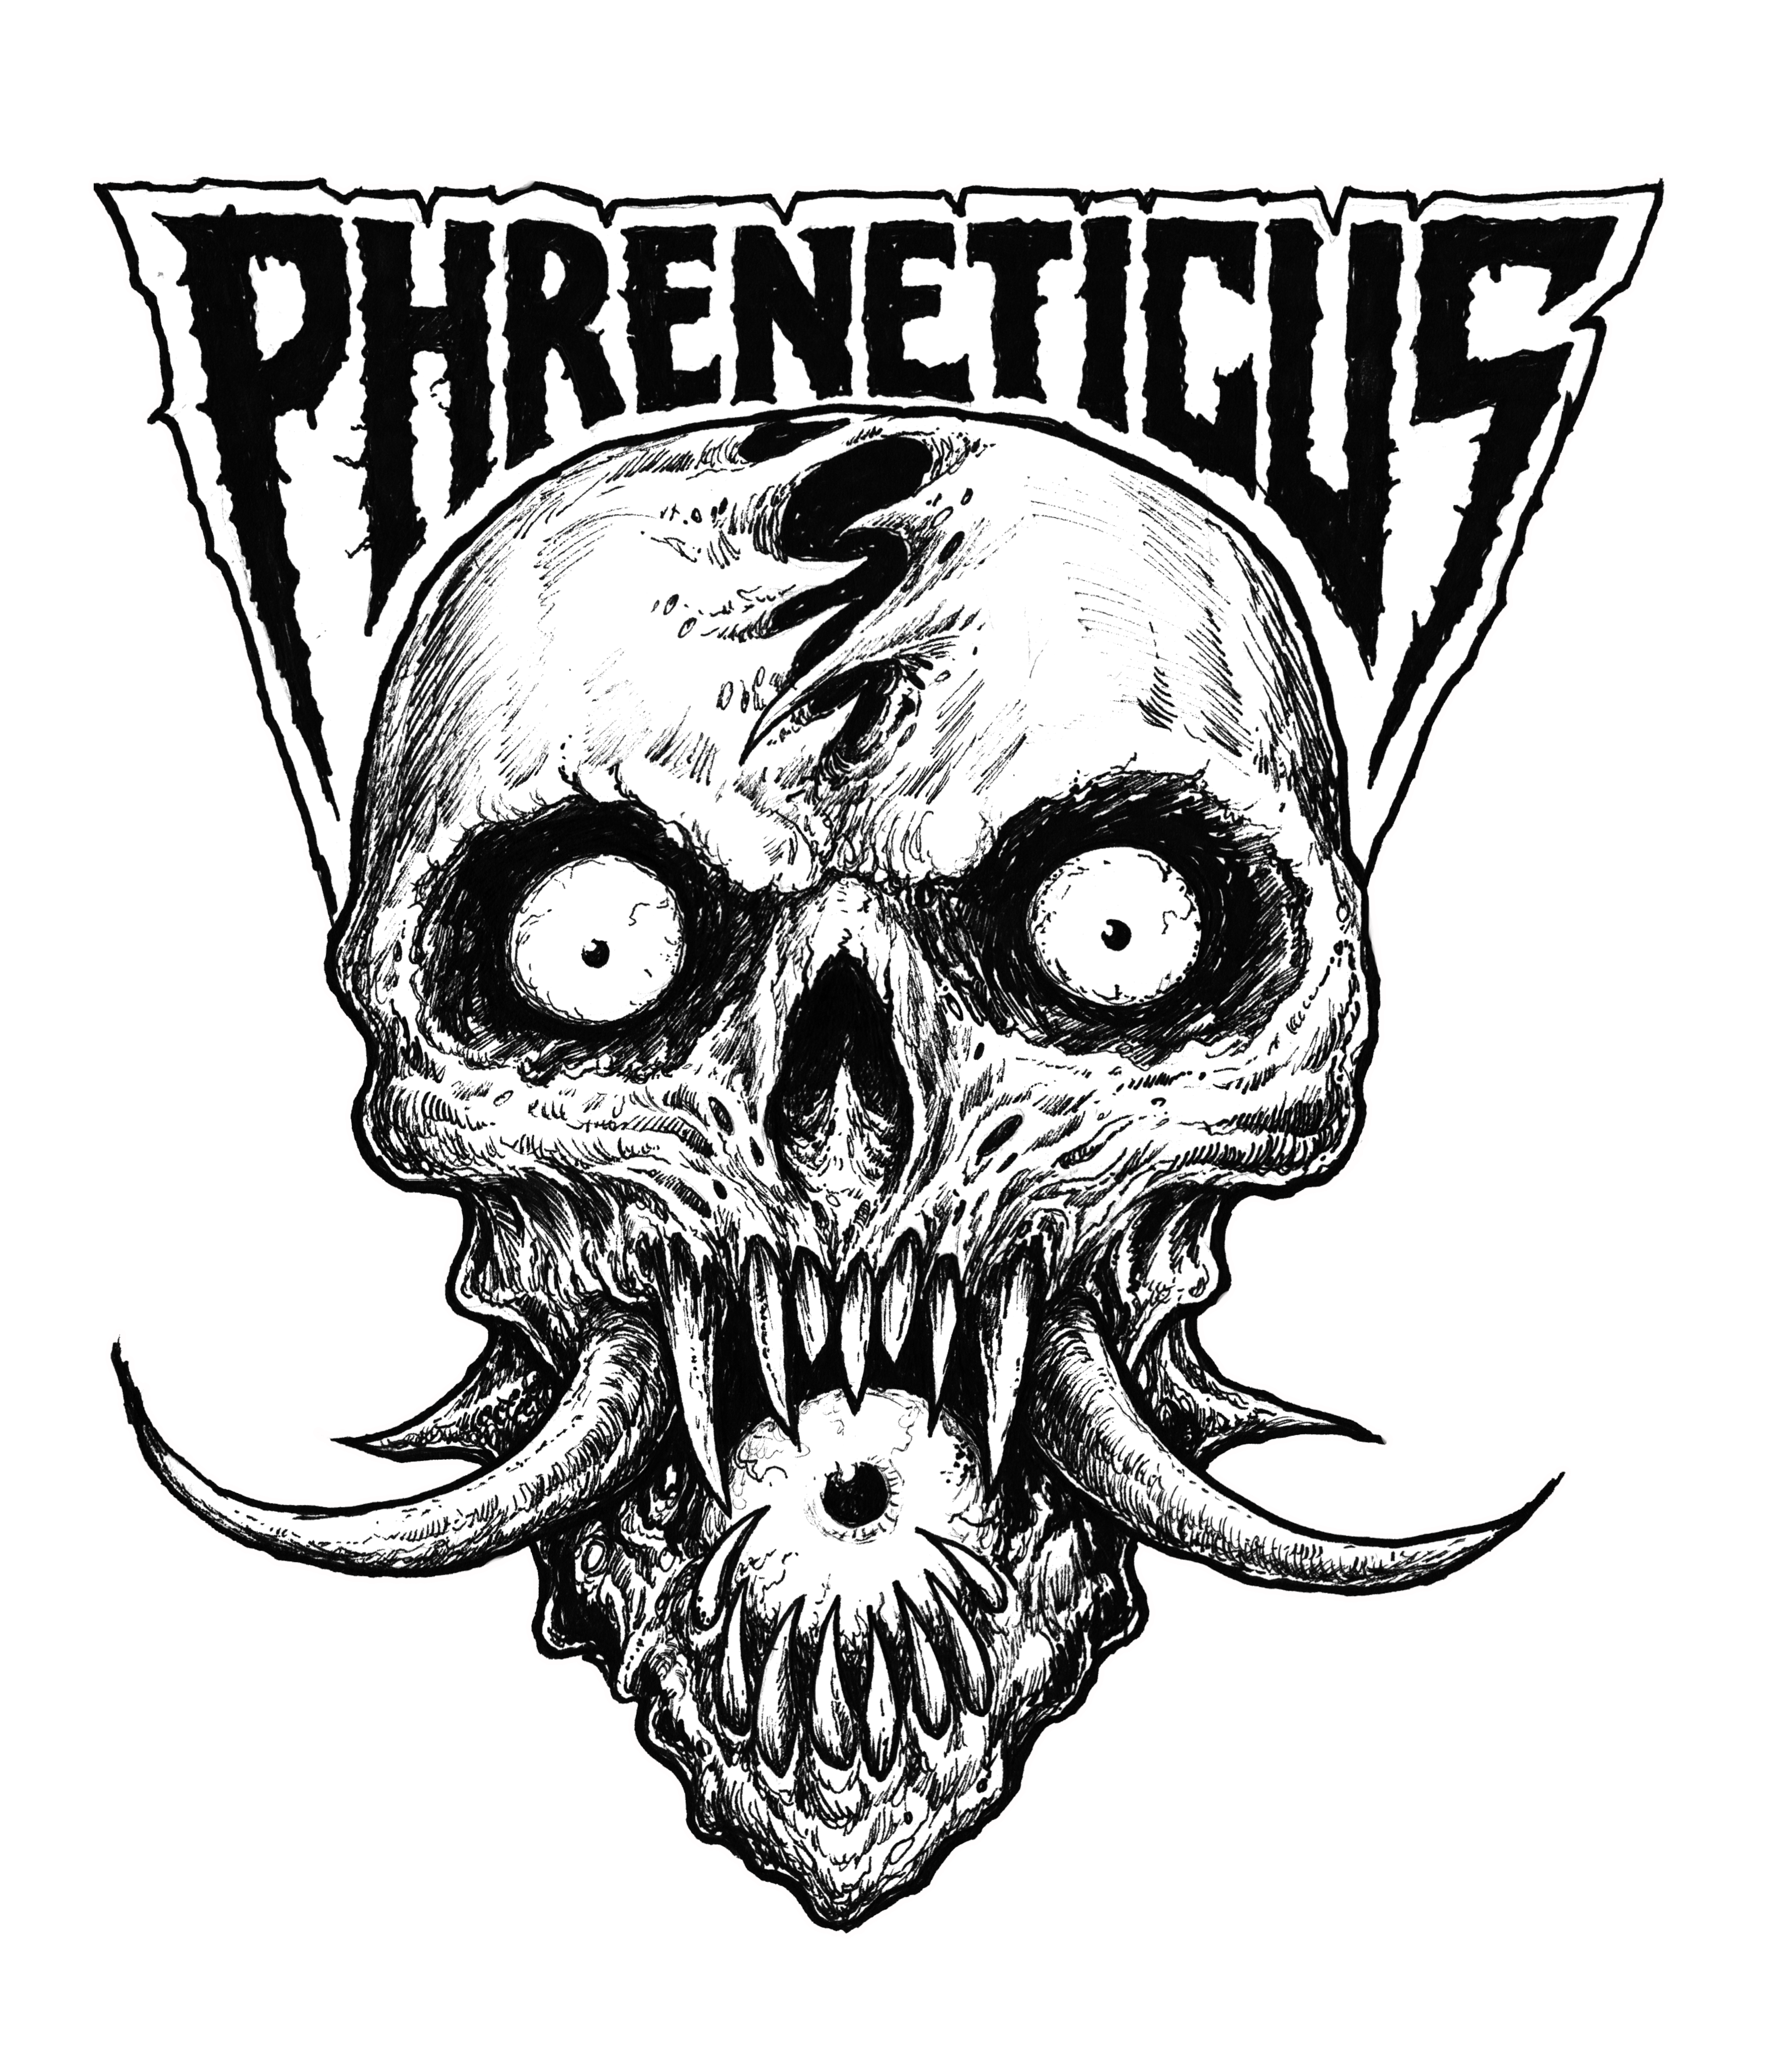 Phreneticus